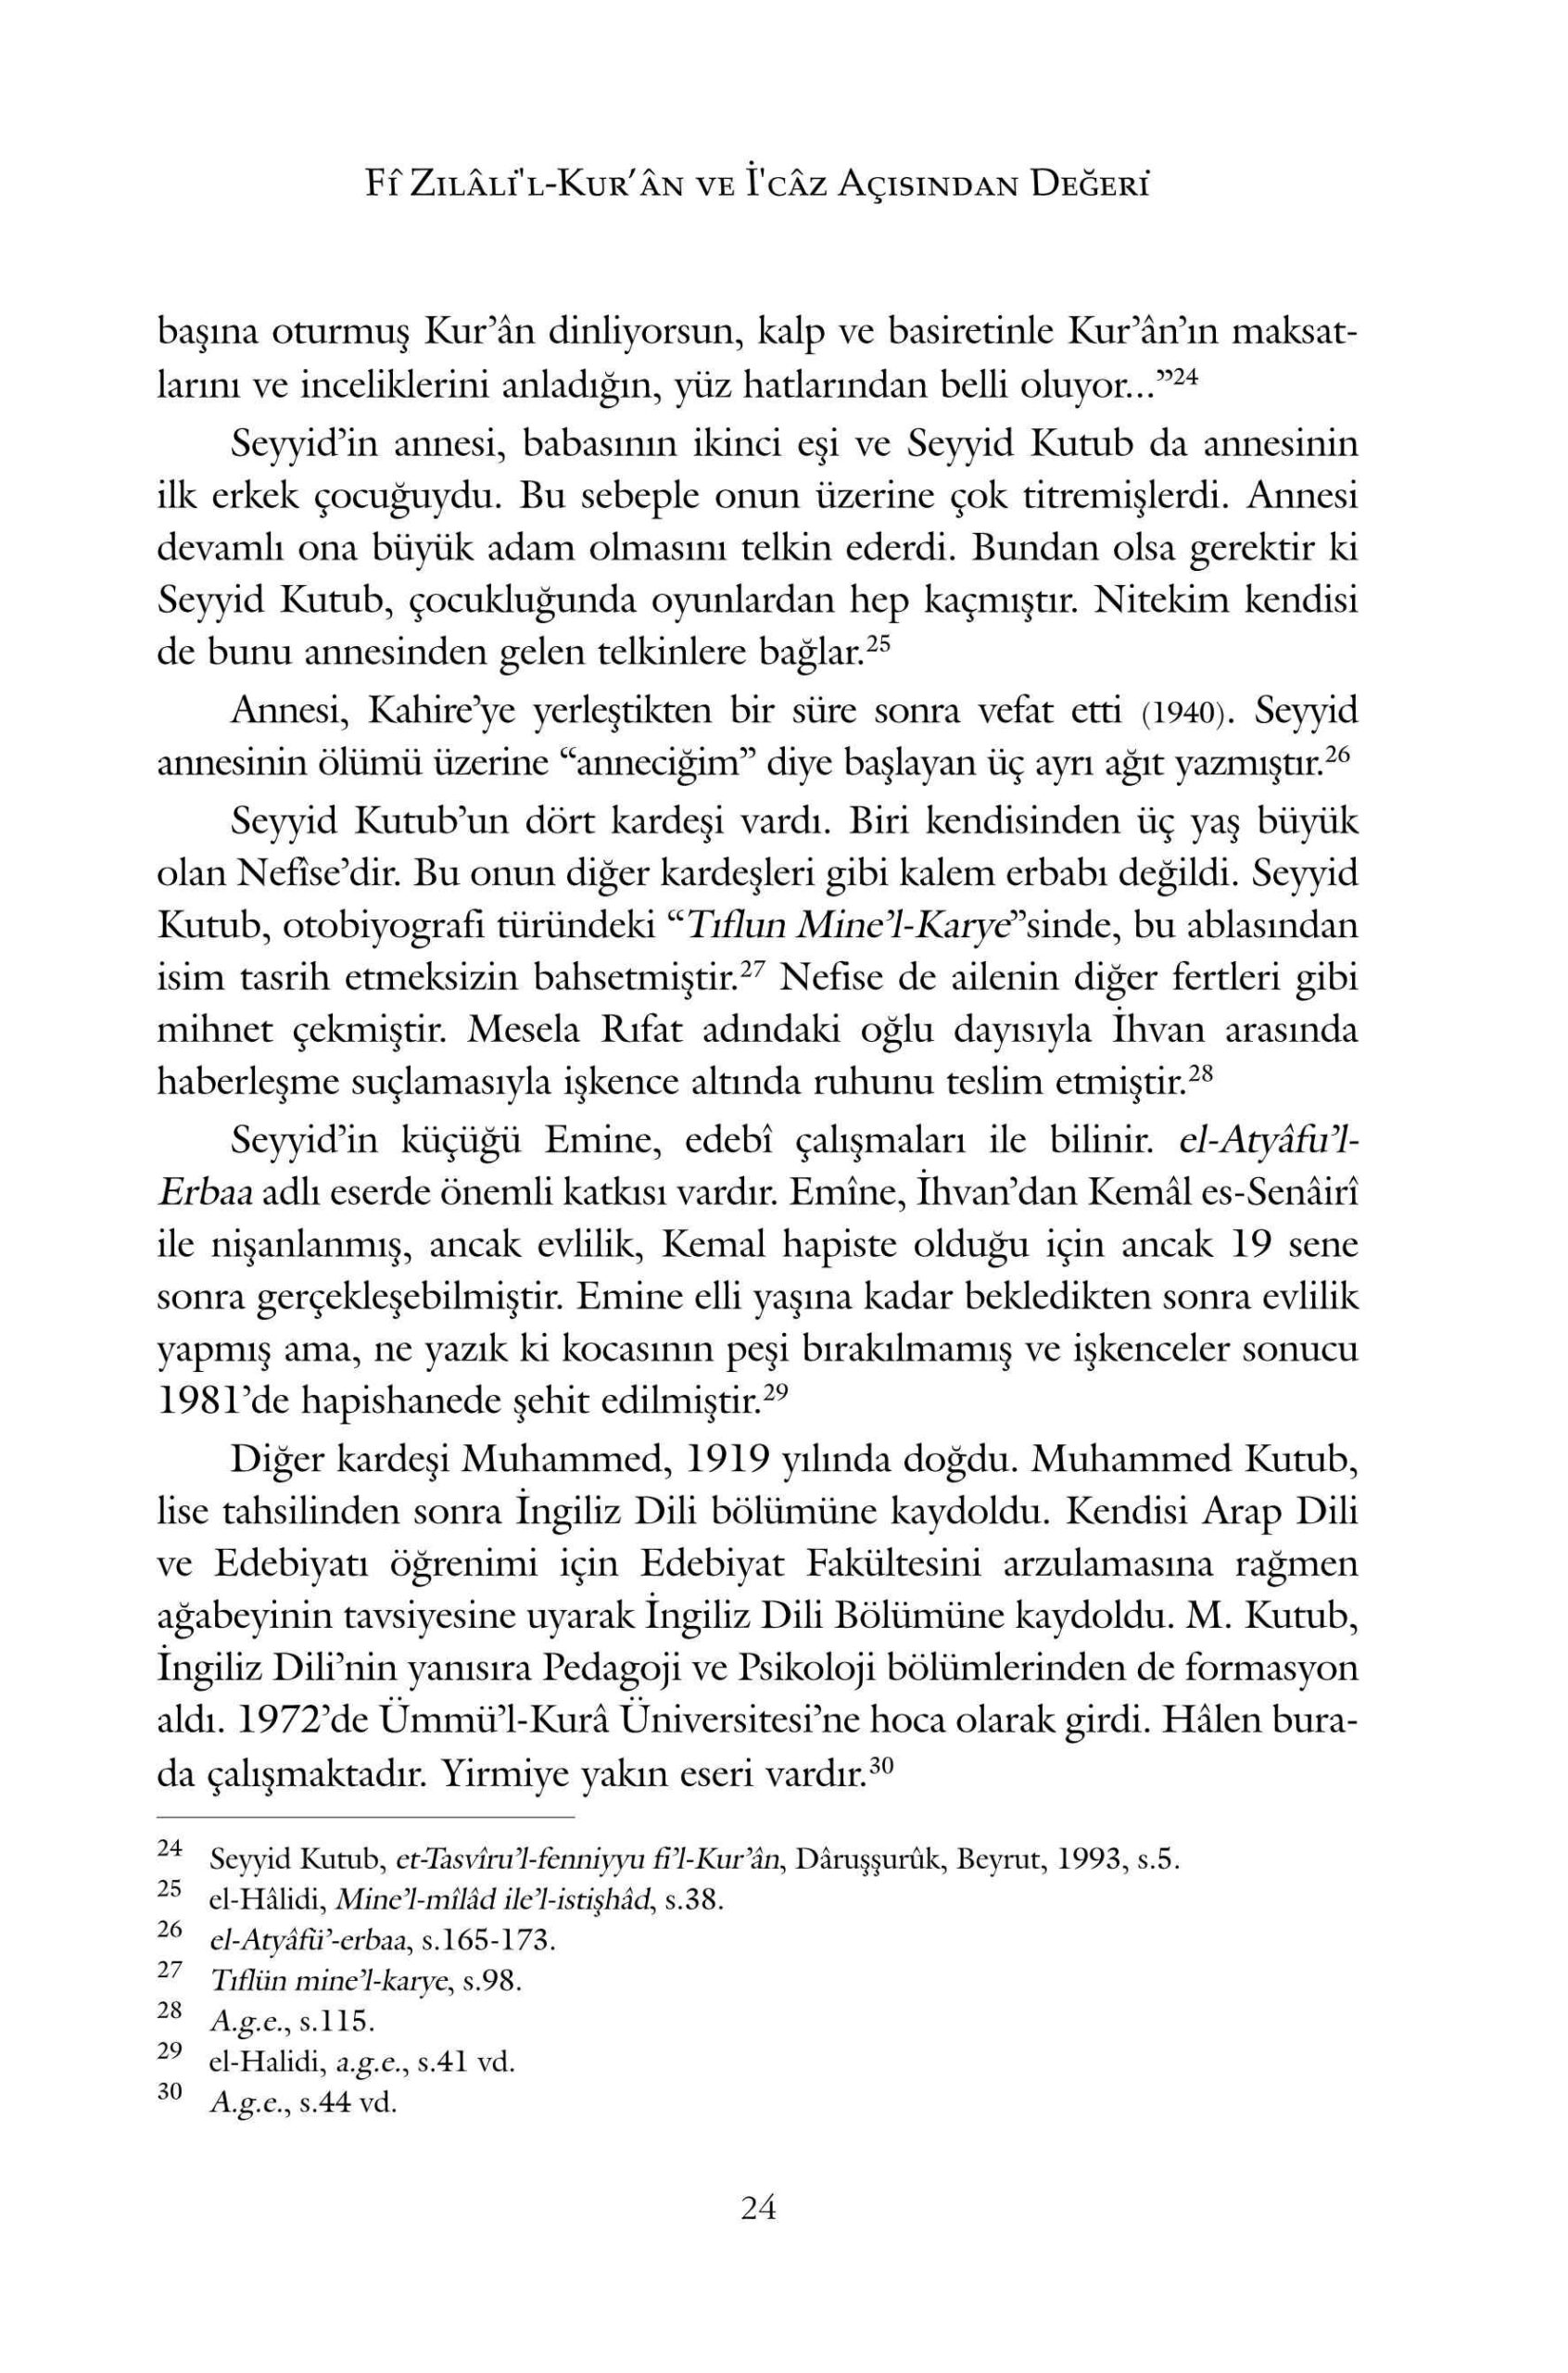 Mesut Erdal - Fî Zilâlil-Kurân ve Icâz Acisindan Degeri - IsikAkademiY.pdf, 217-Sayfa 